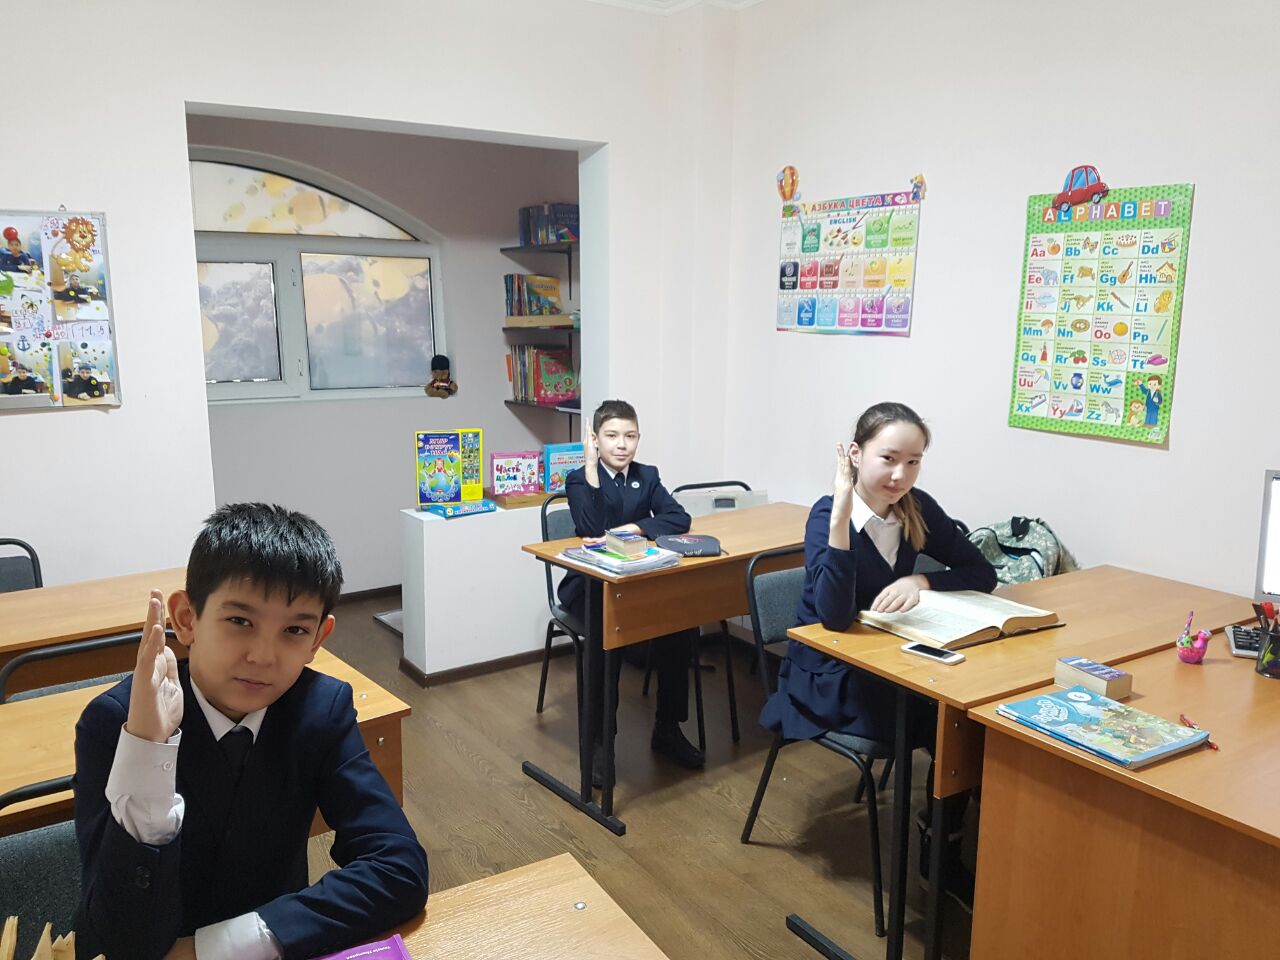 Подготовка ребенка к ЕНТ, НИШ, РФМШ, КТА, Детский образовательный центр в Алматы KidsMart